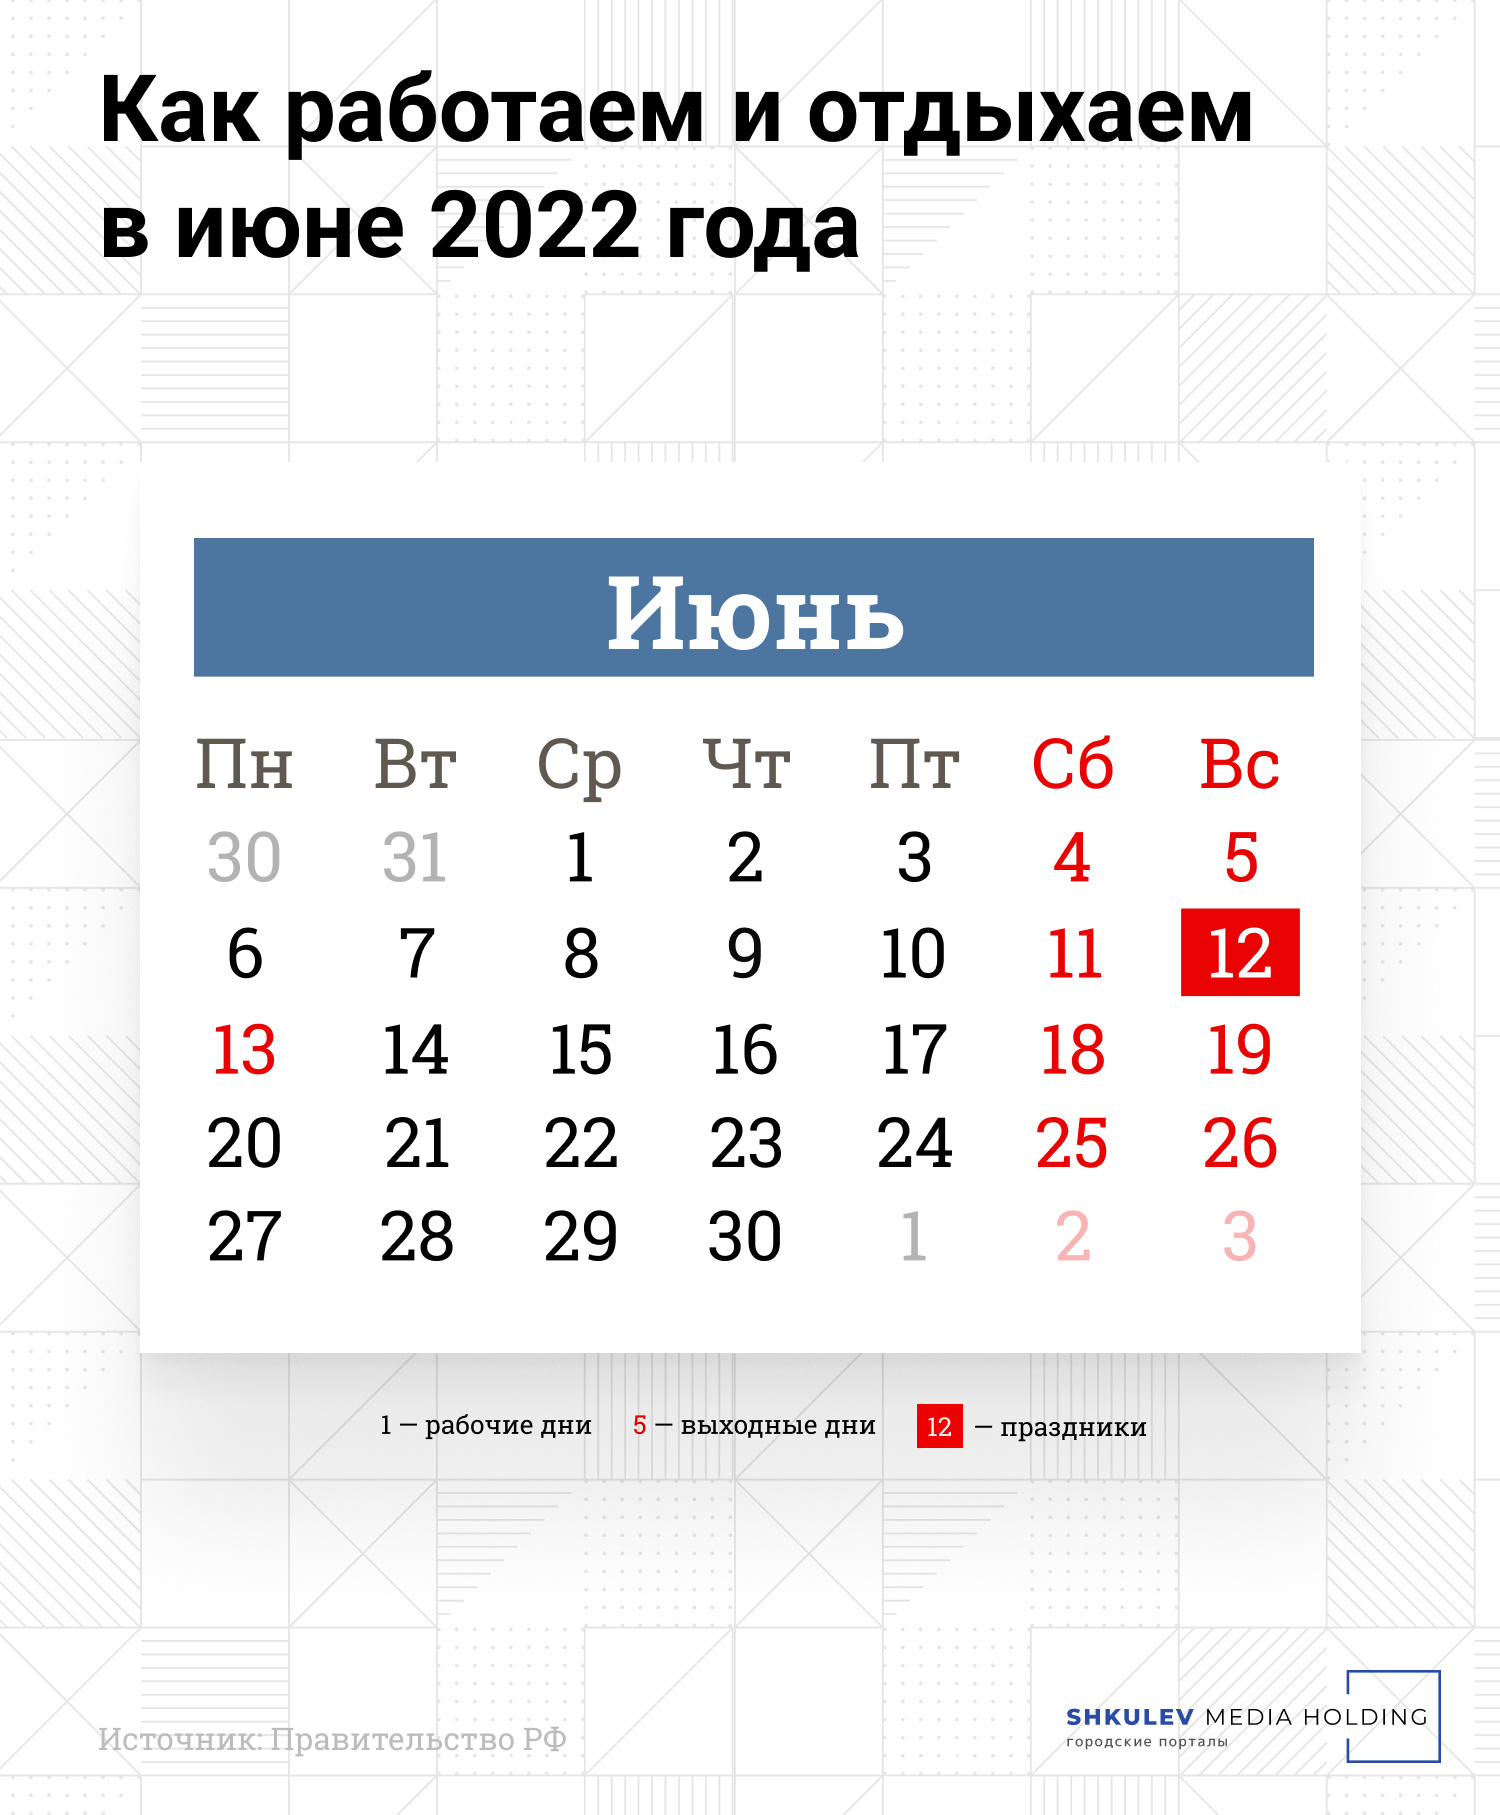 Как работаем и отдыхаем в июне 2022 года